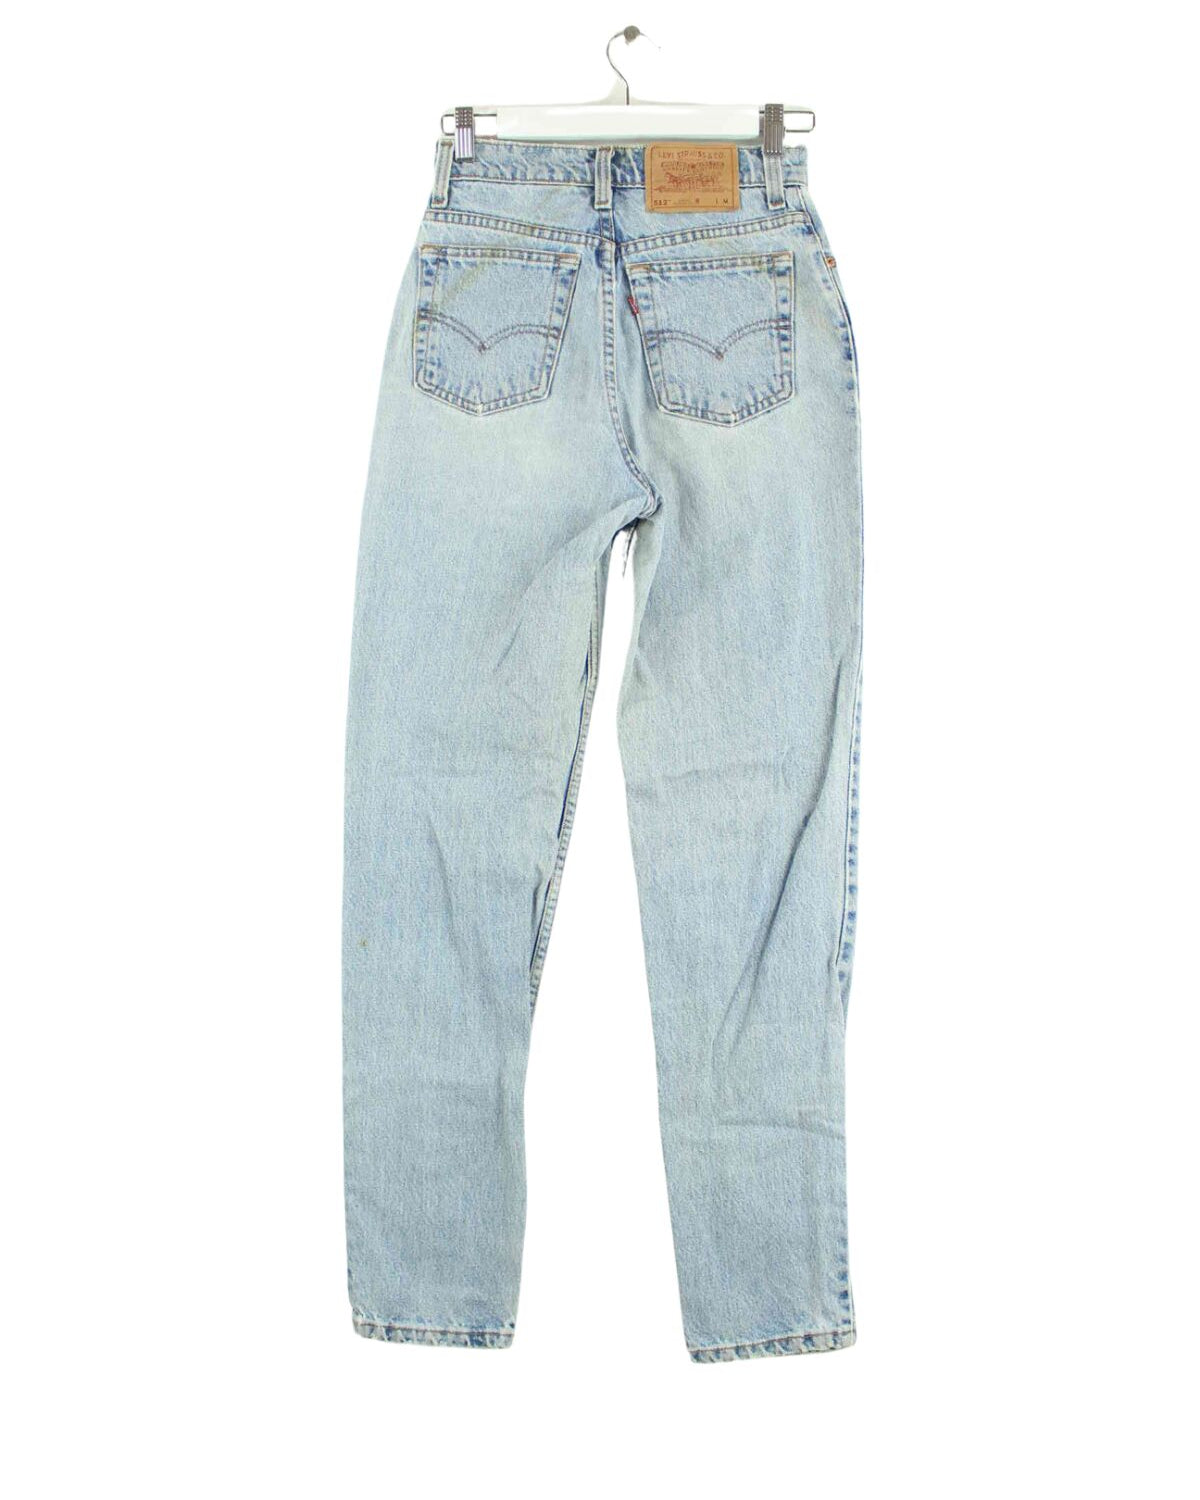 Levi's 1996 Vintage 512 Tapered Jeans Blau W25 L32 (back image)